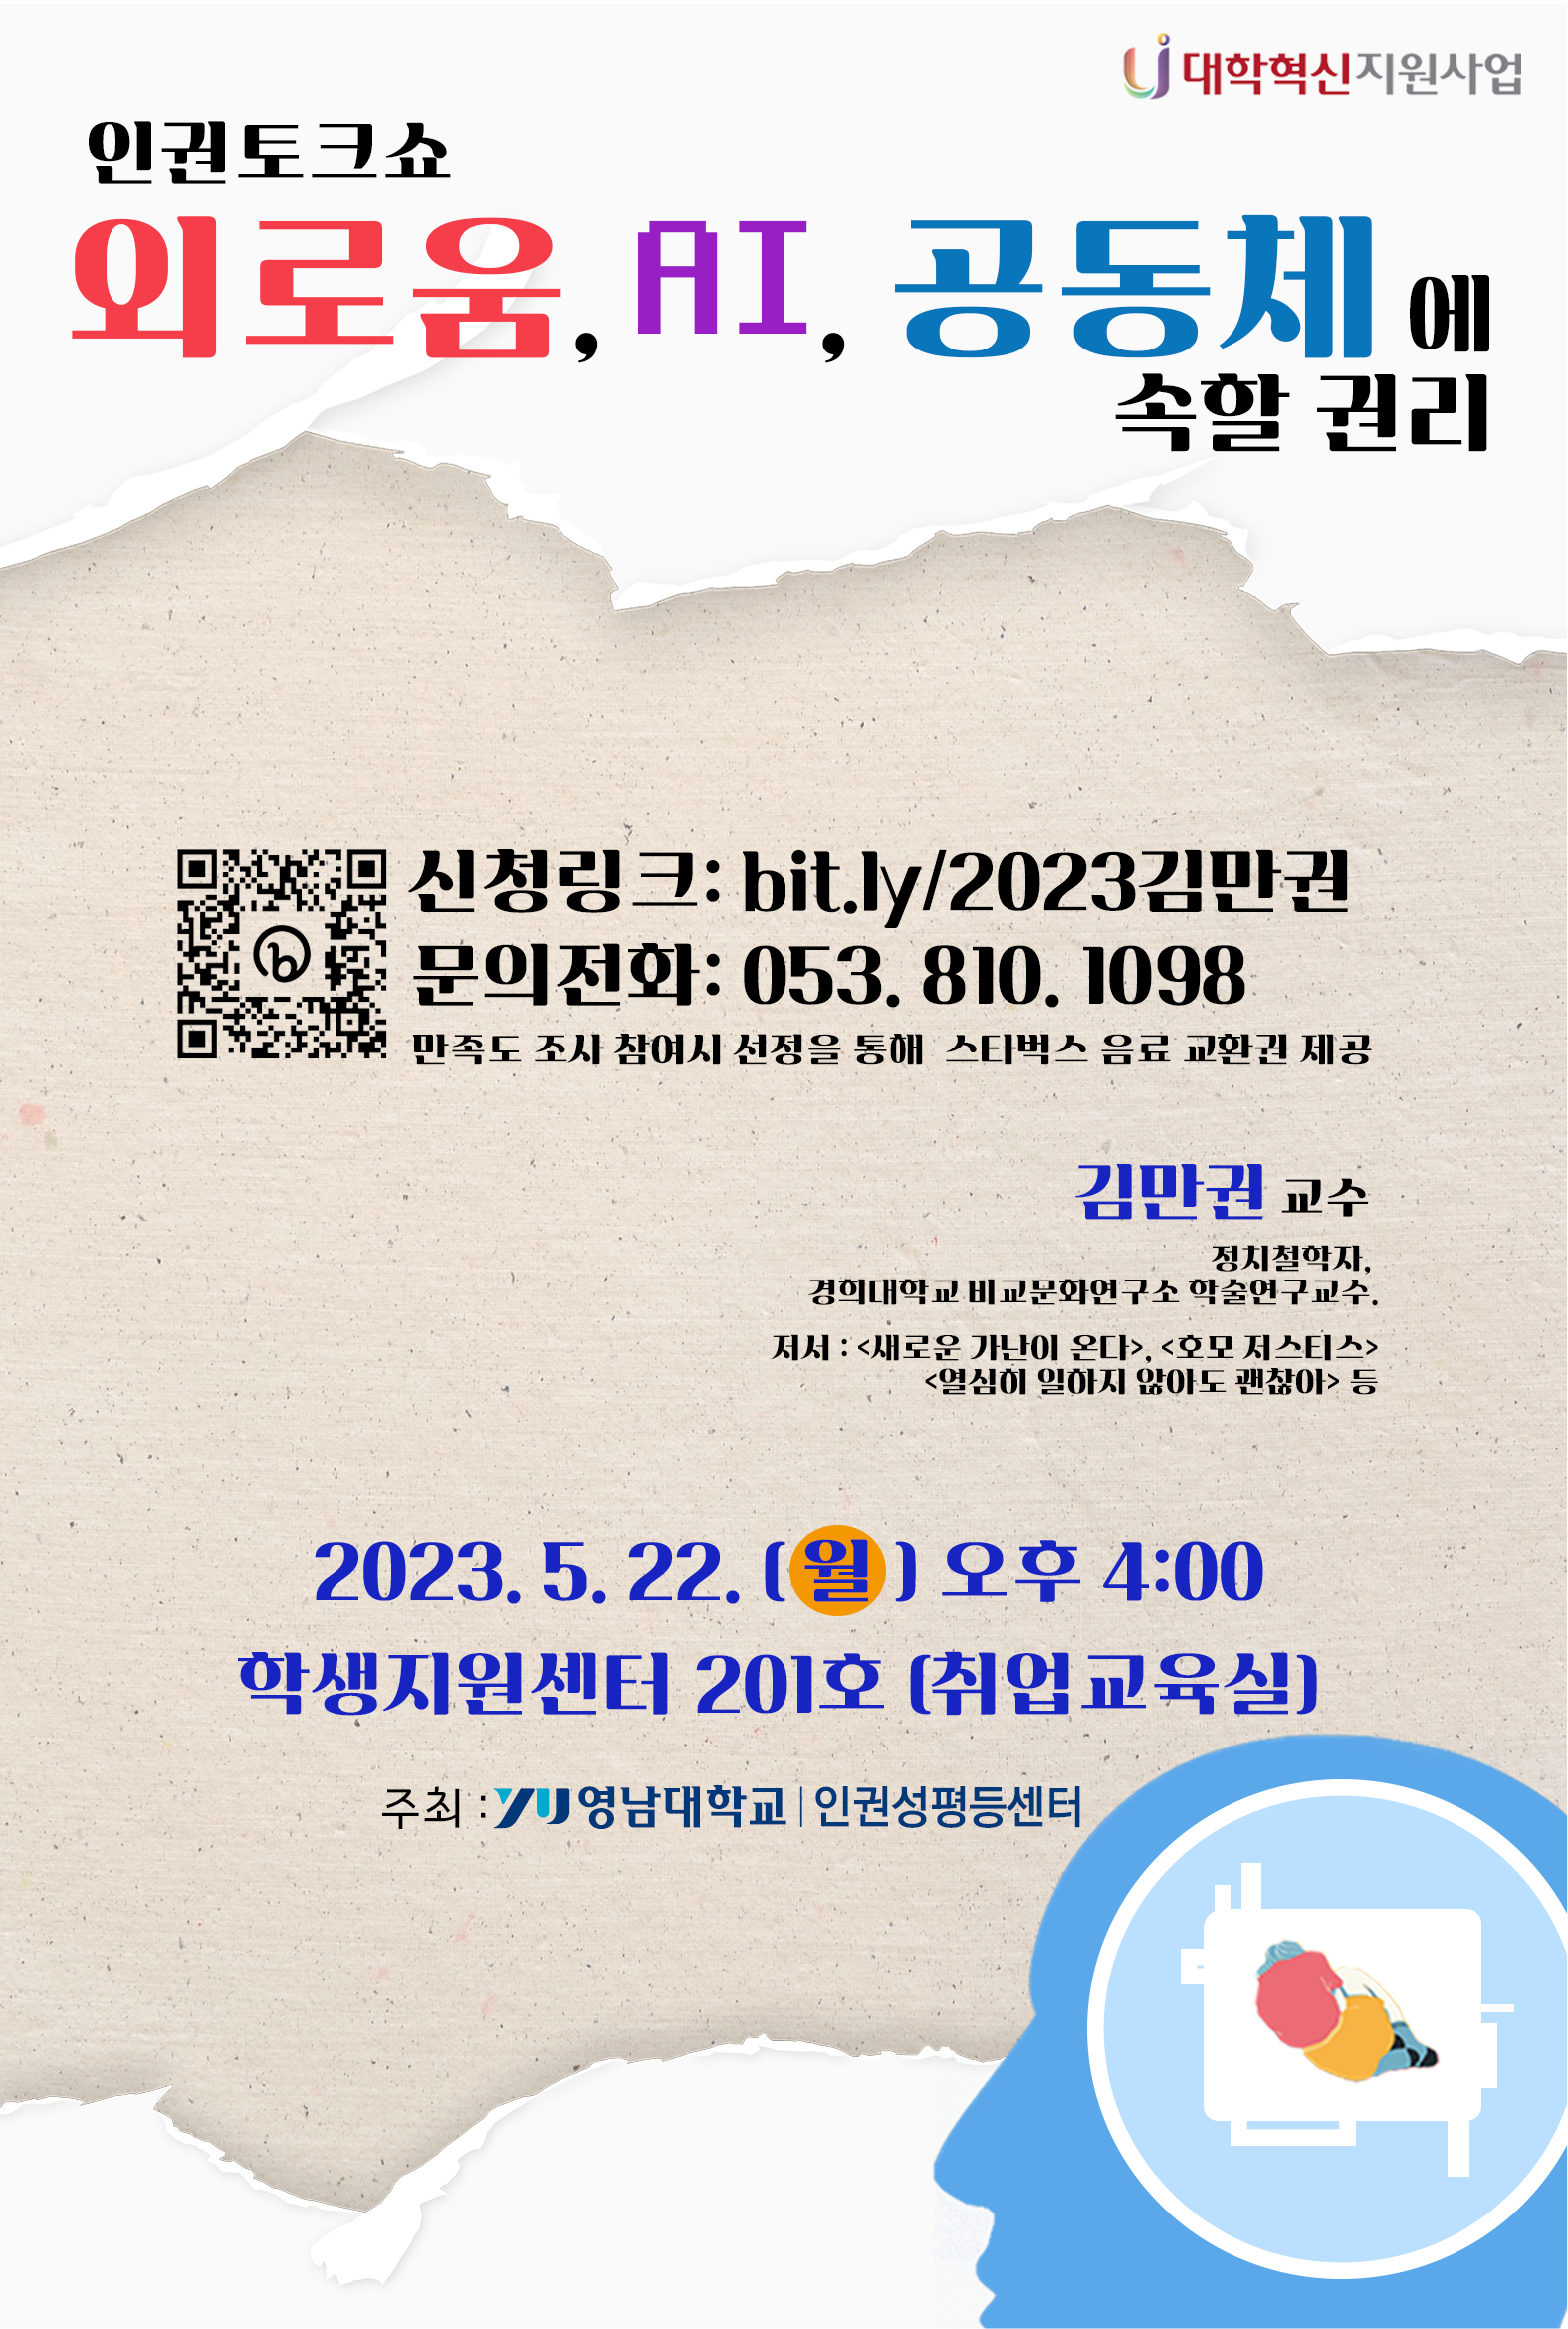 [홍보] 영남대학교 인권성평등센터 인권토크쇼 개최